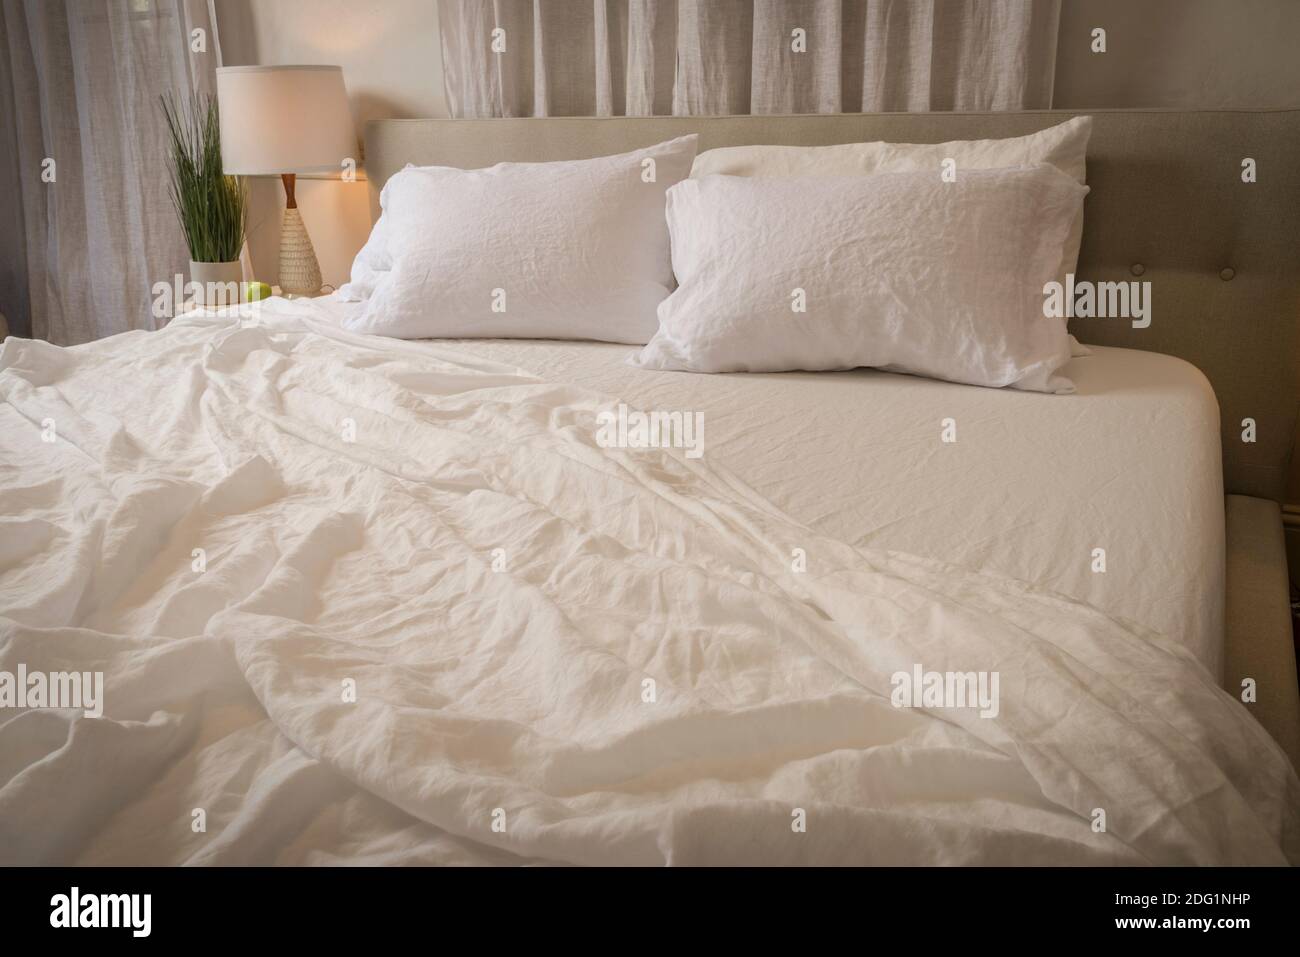 Faltige Bettlaken in unordentliches Schlafzimmer, USA Stockfoto